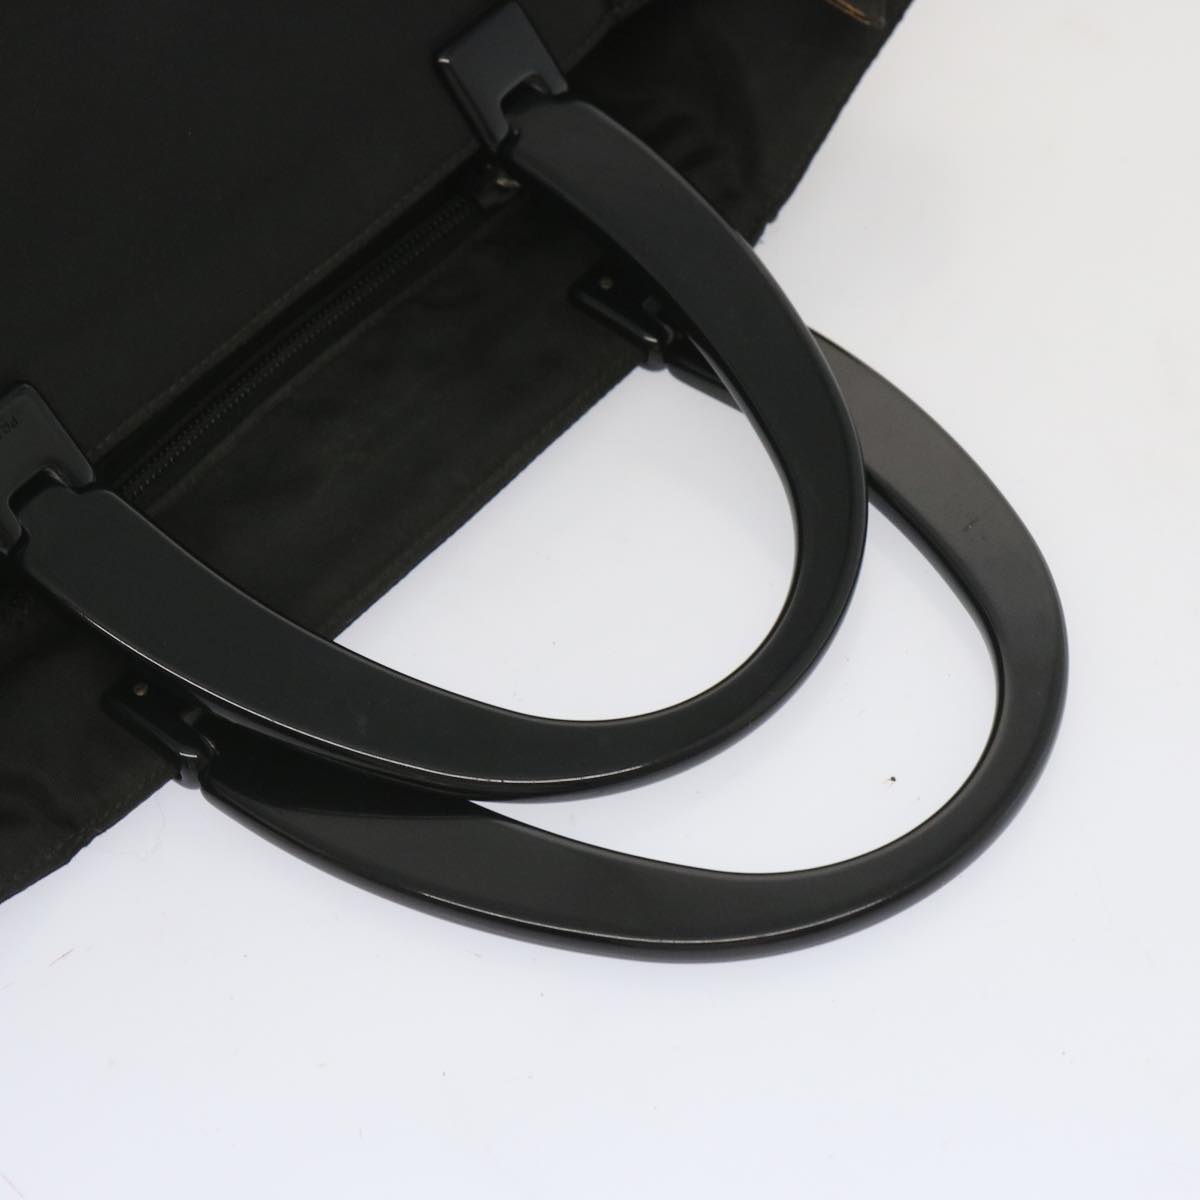 PRADA Hand Bag Nylon Black Auth hk1182